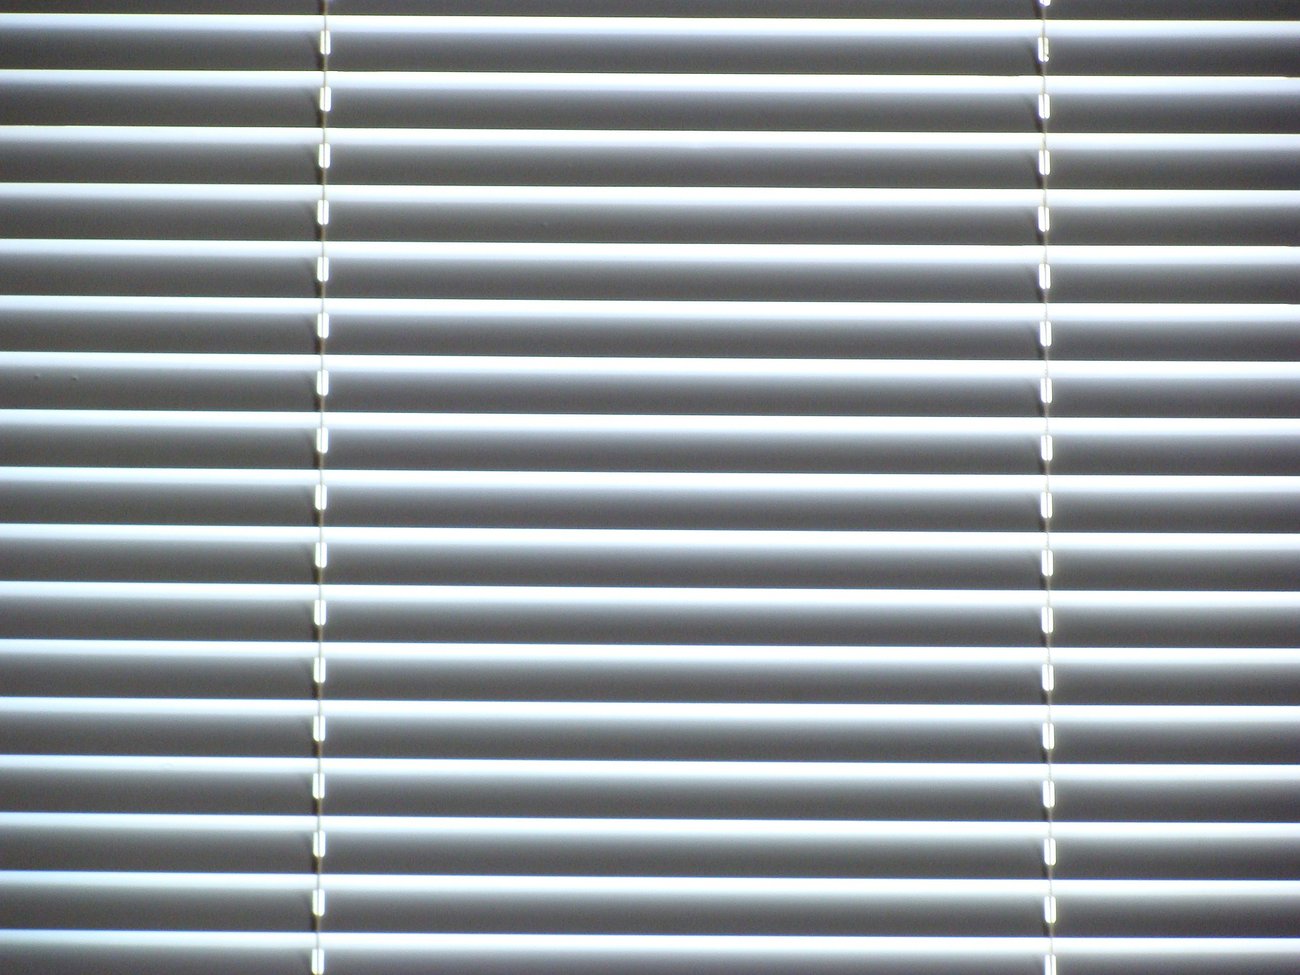  External blinds